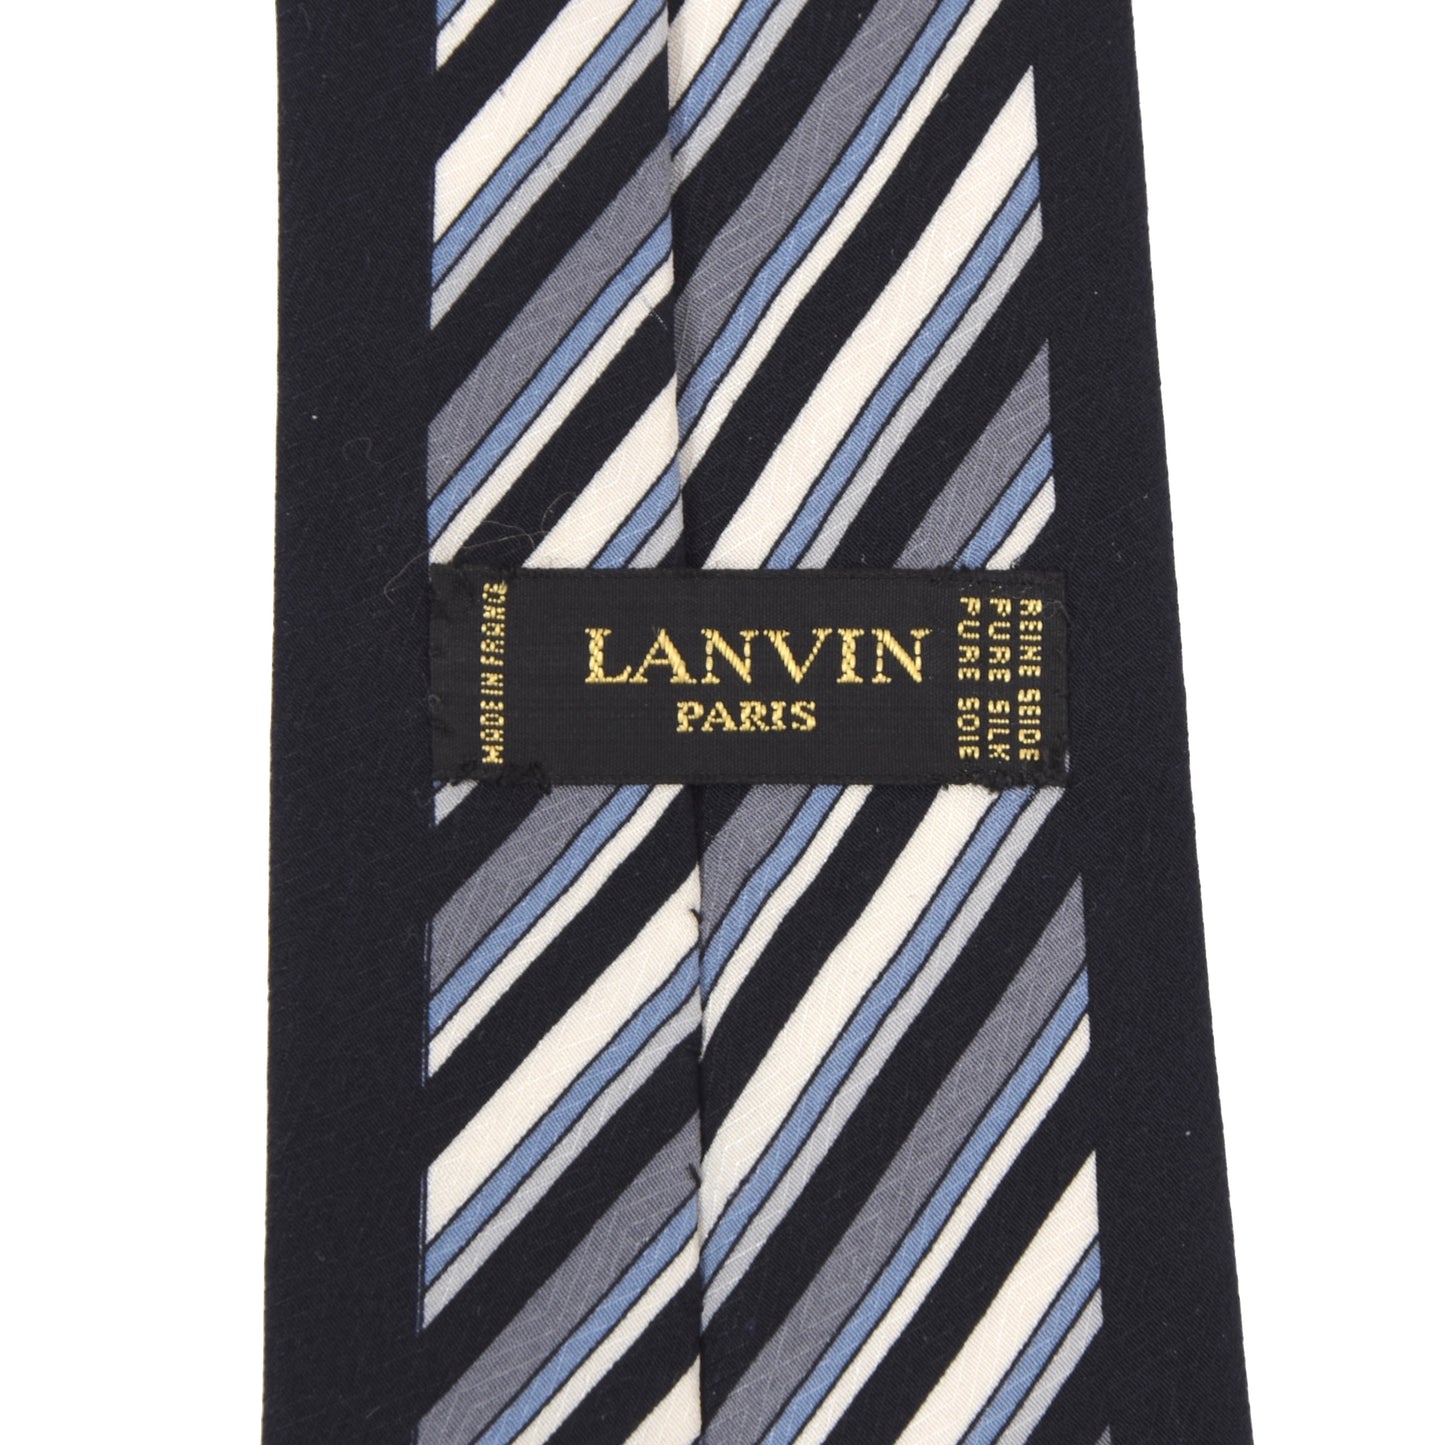 Lanvin Paris Striped Silk Tie - Navy Striped